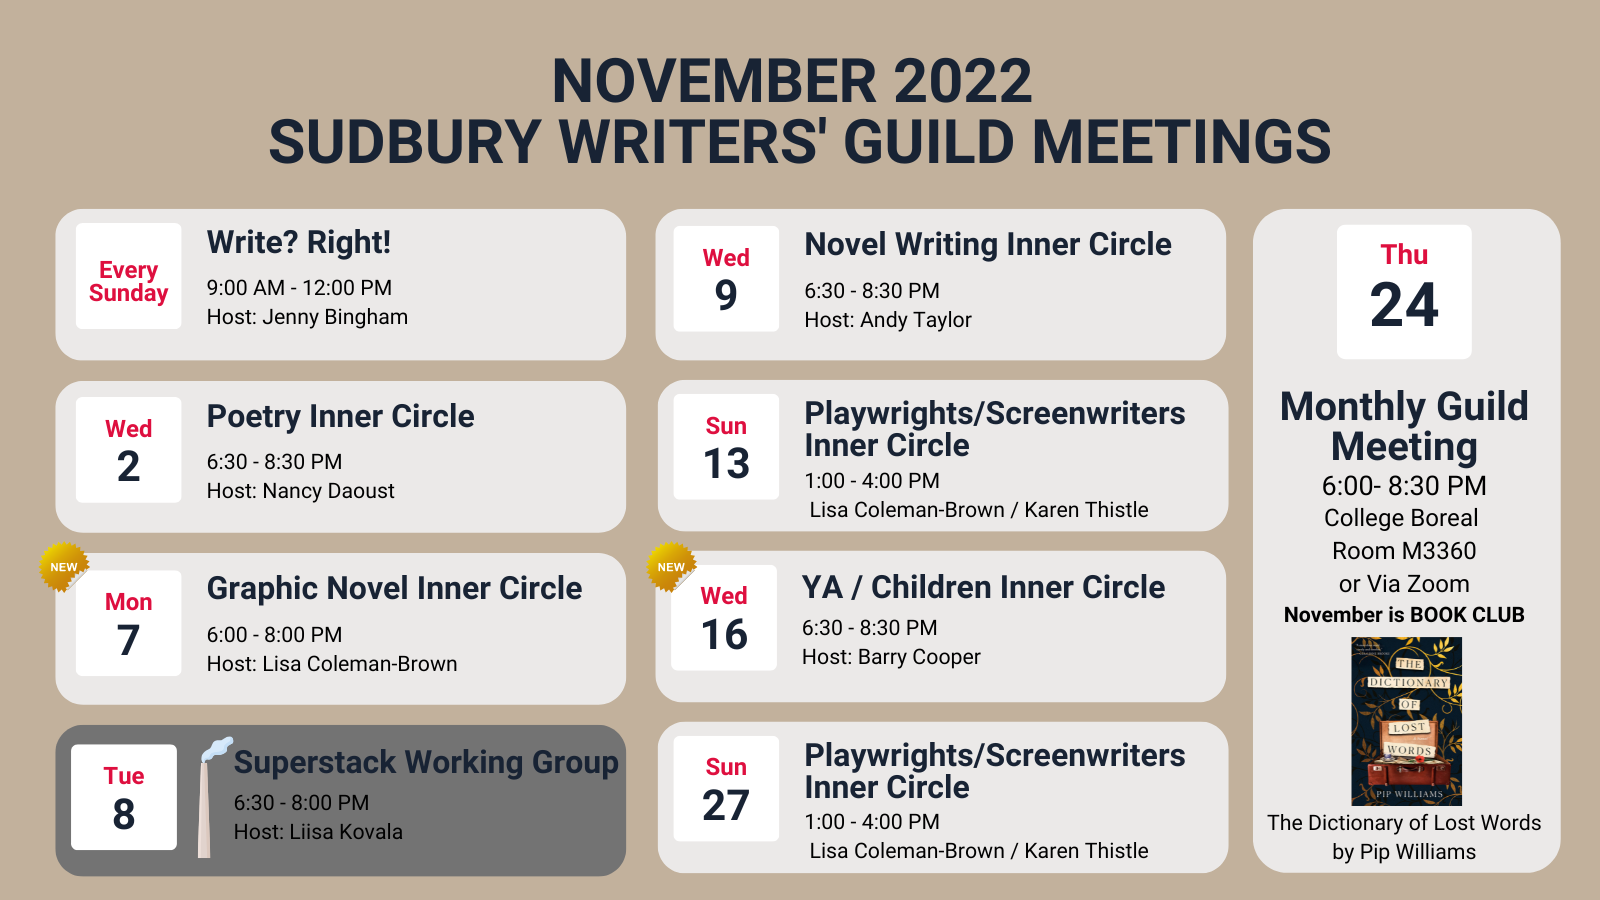 November 2022 Writers’ Guild Meetings